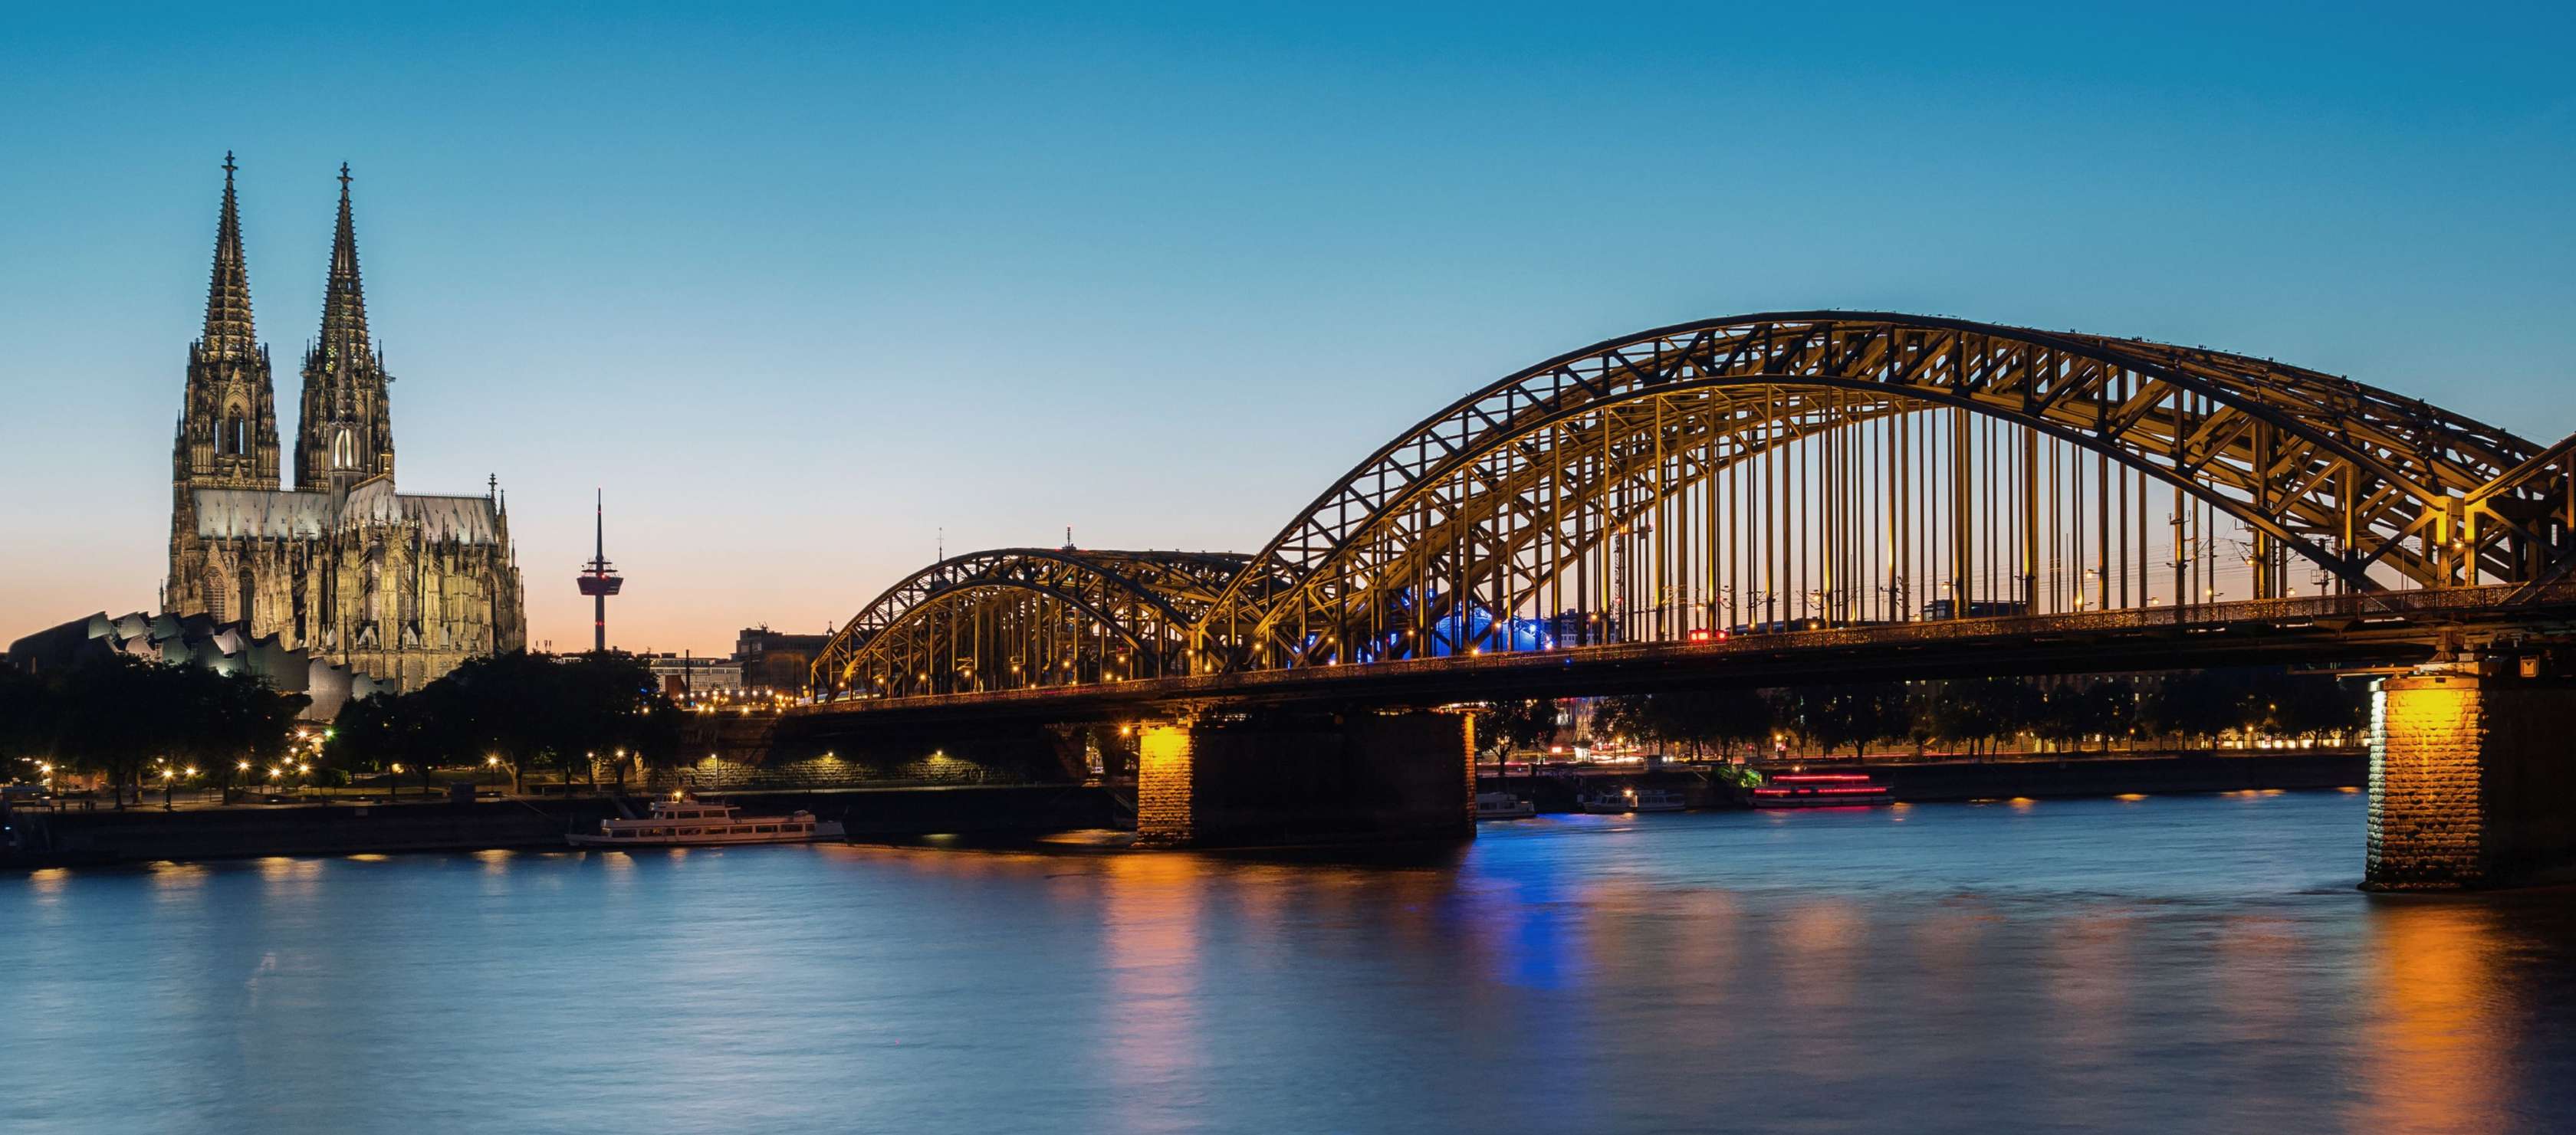 Allianz - Agentursuche Köln: Blick auf die Hohenzollnerbrücke und den Kölner Dom bei Nacht